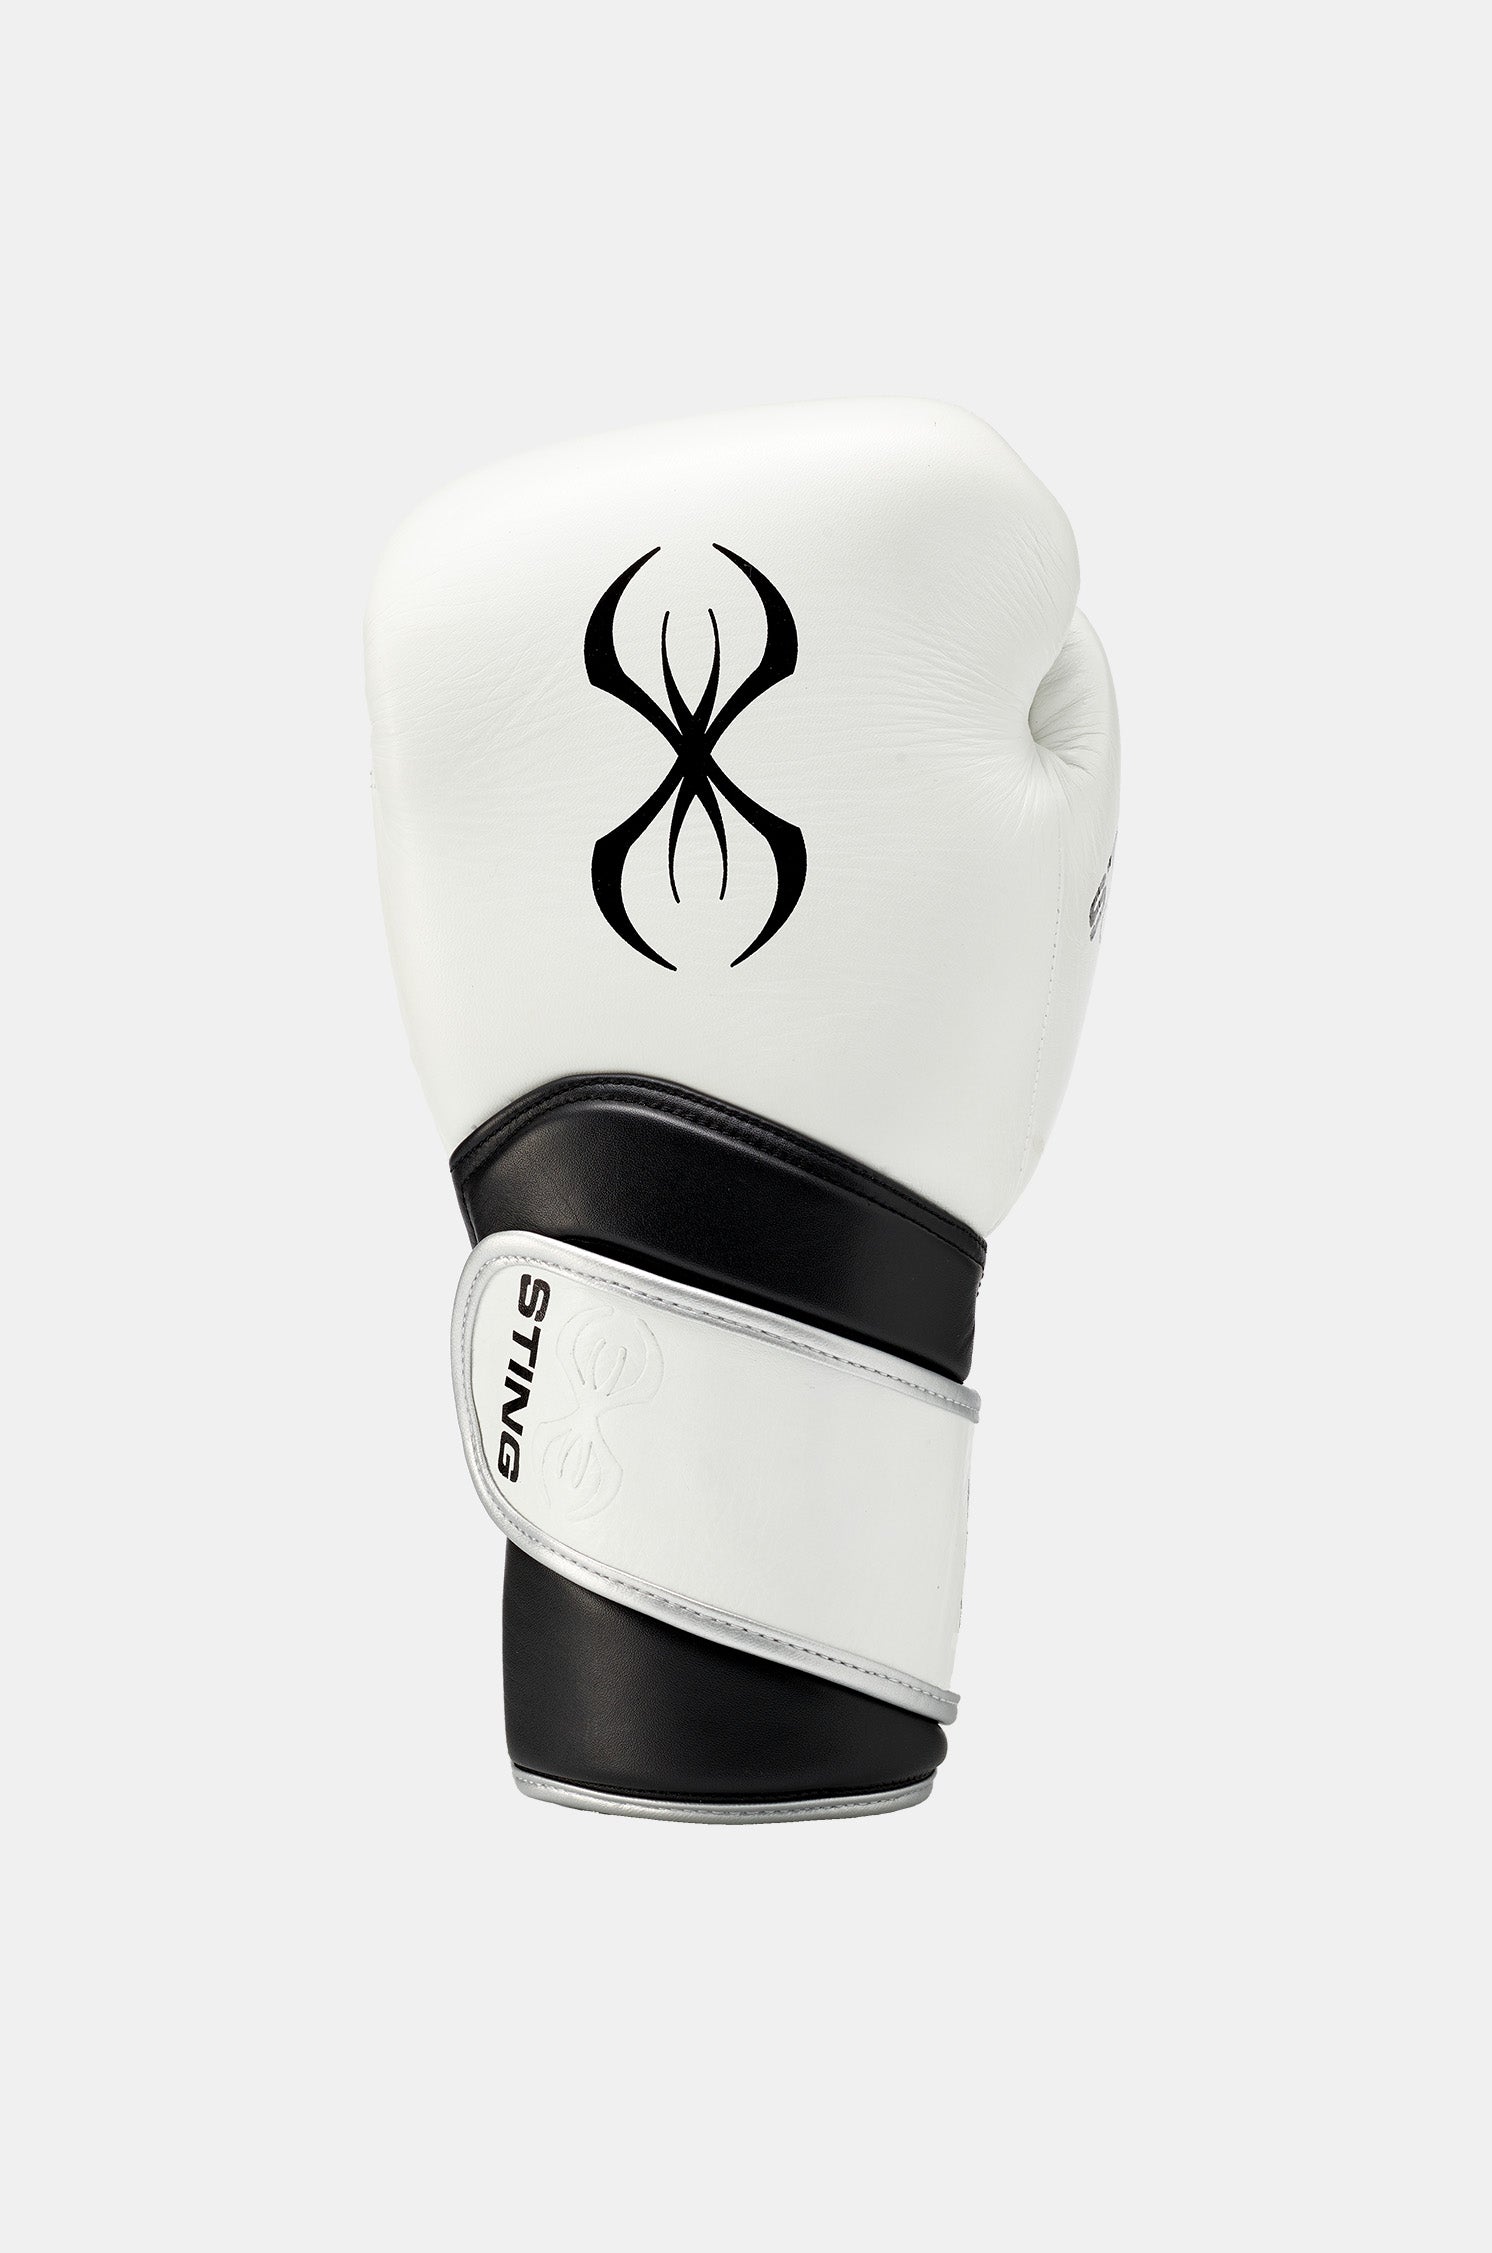 STING Viper Boxing Glove White Black